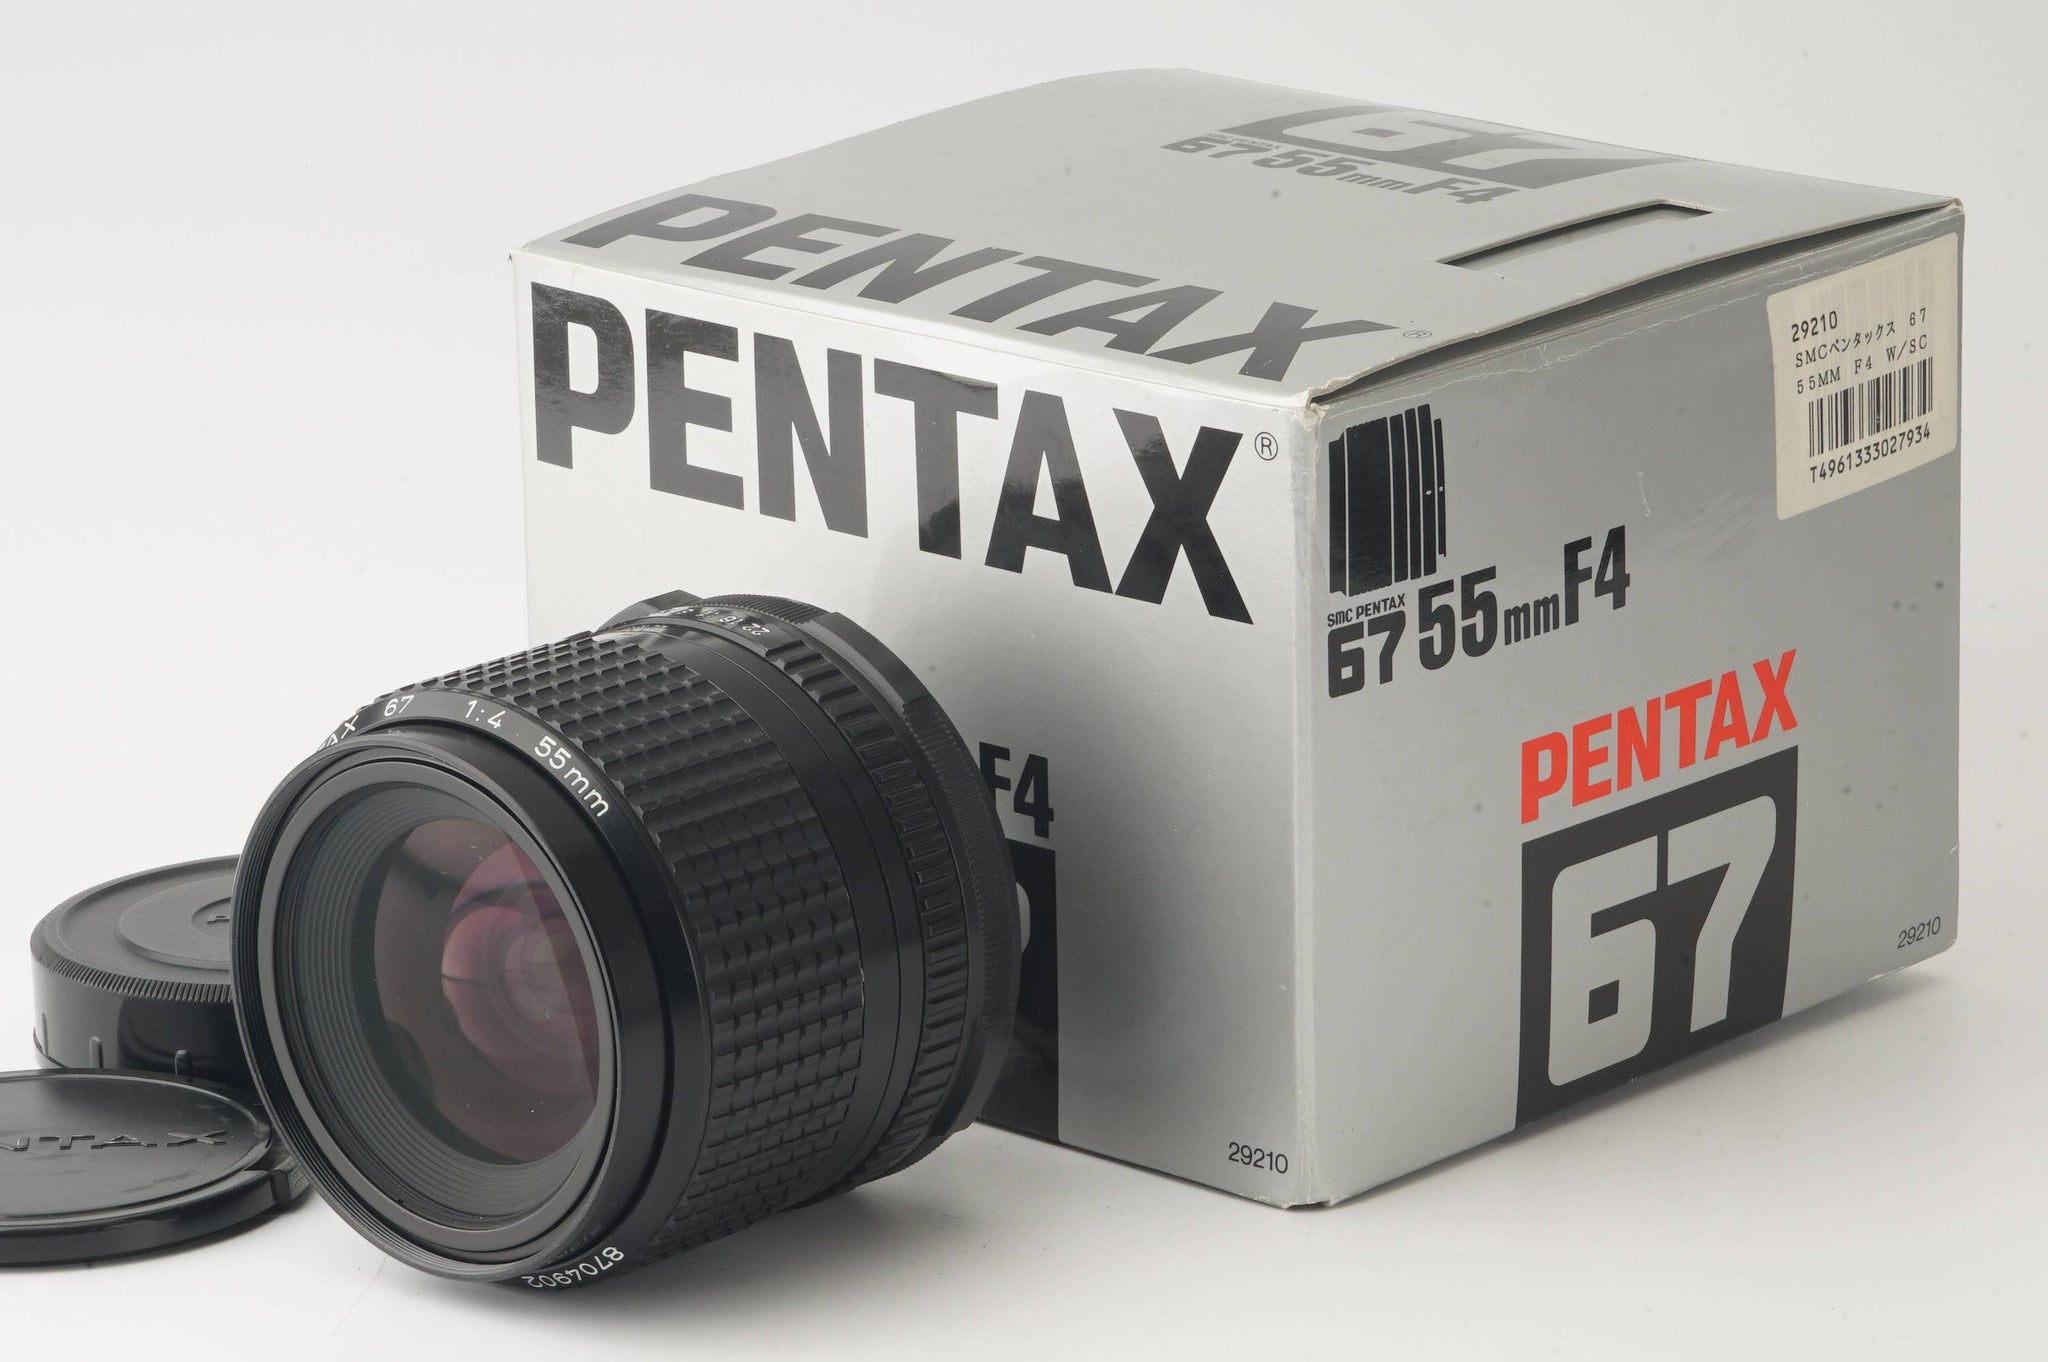 ペンタックス67PENTAX SMC67 55mm F4 ペンタックス67